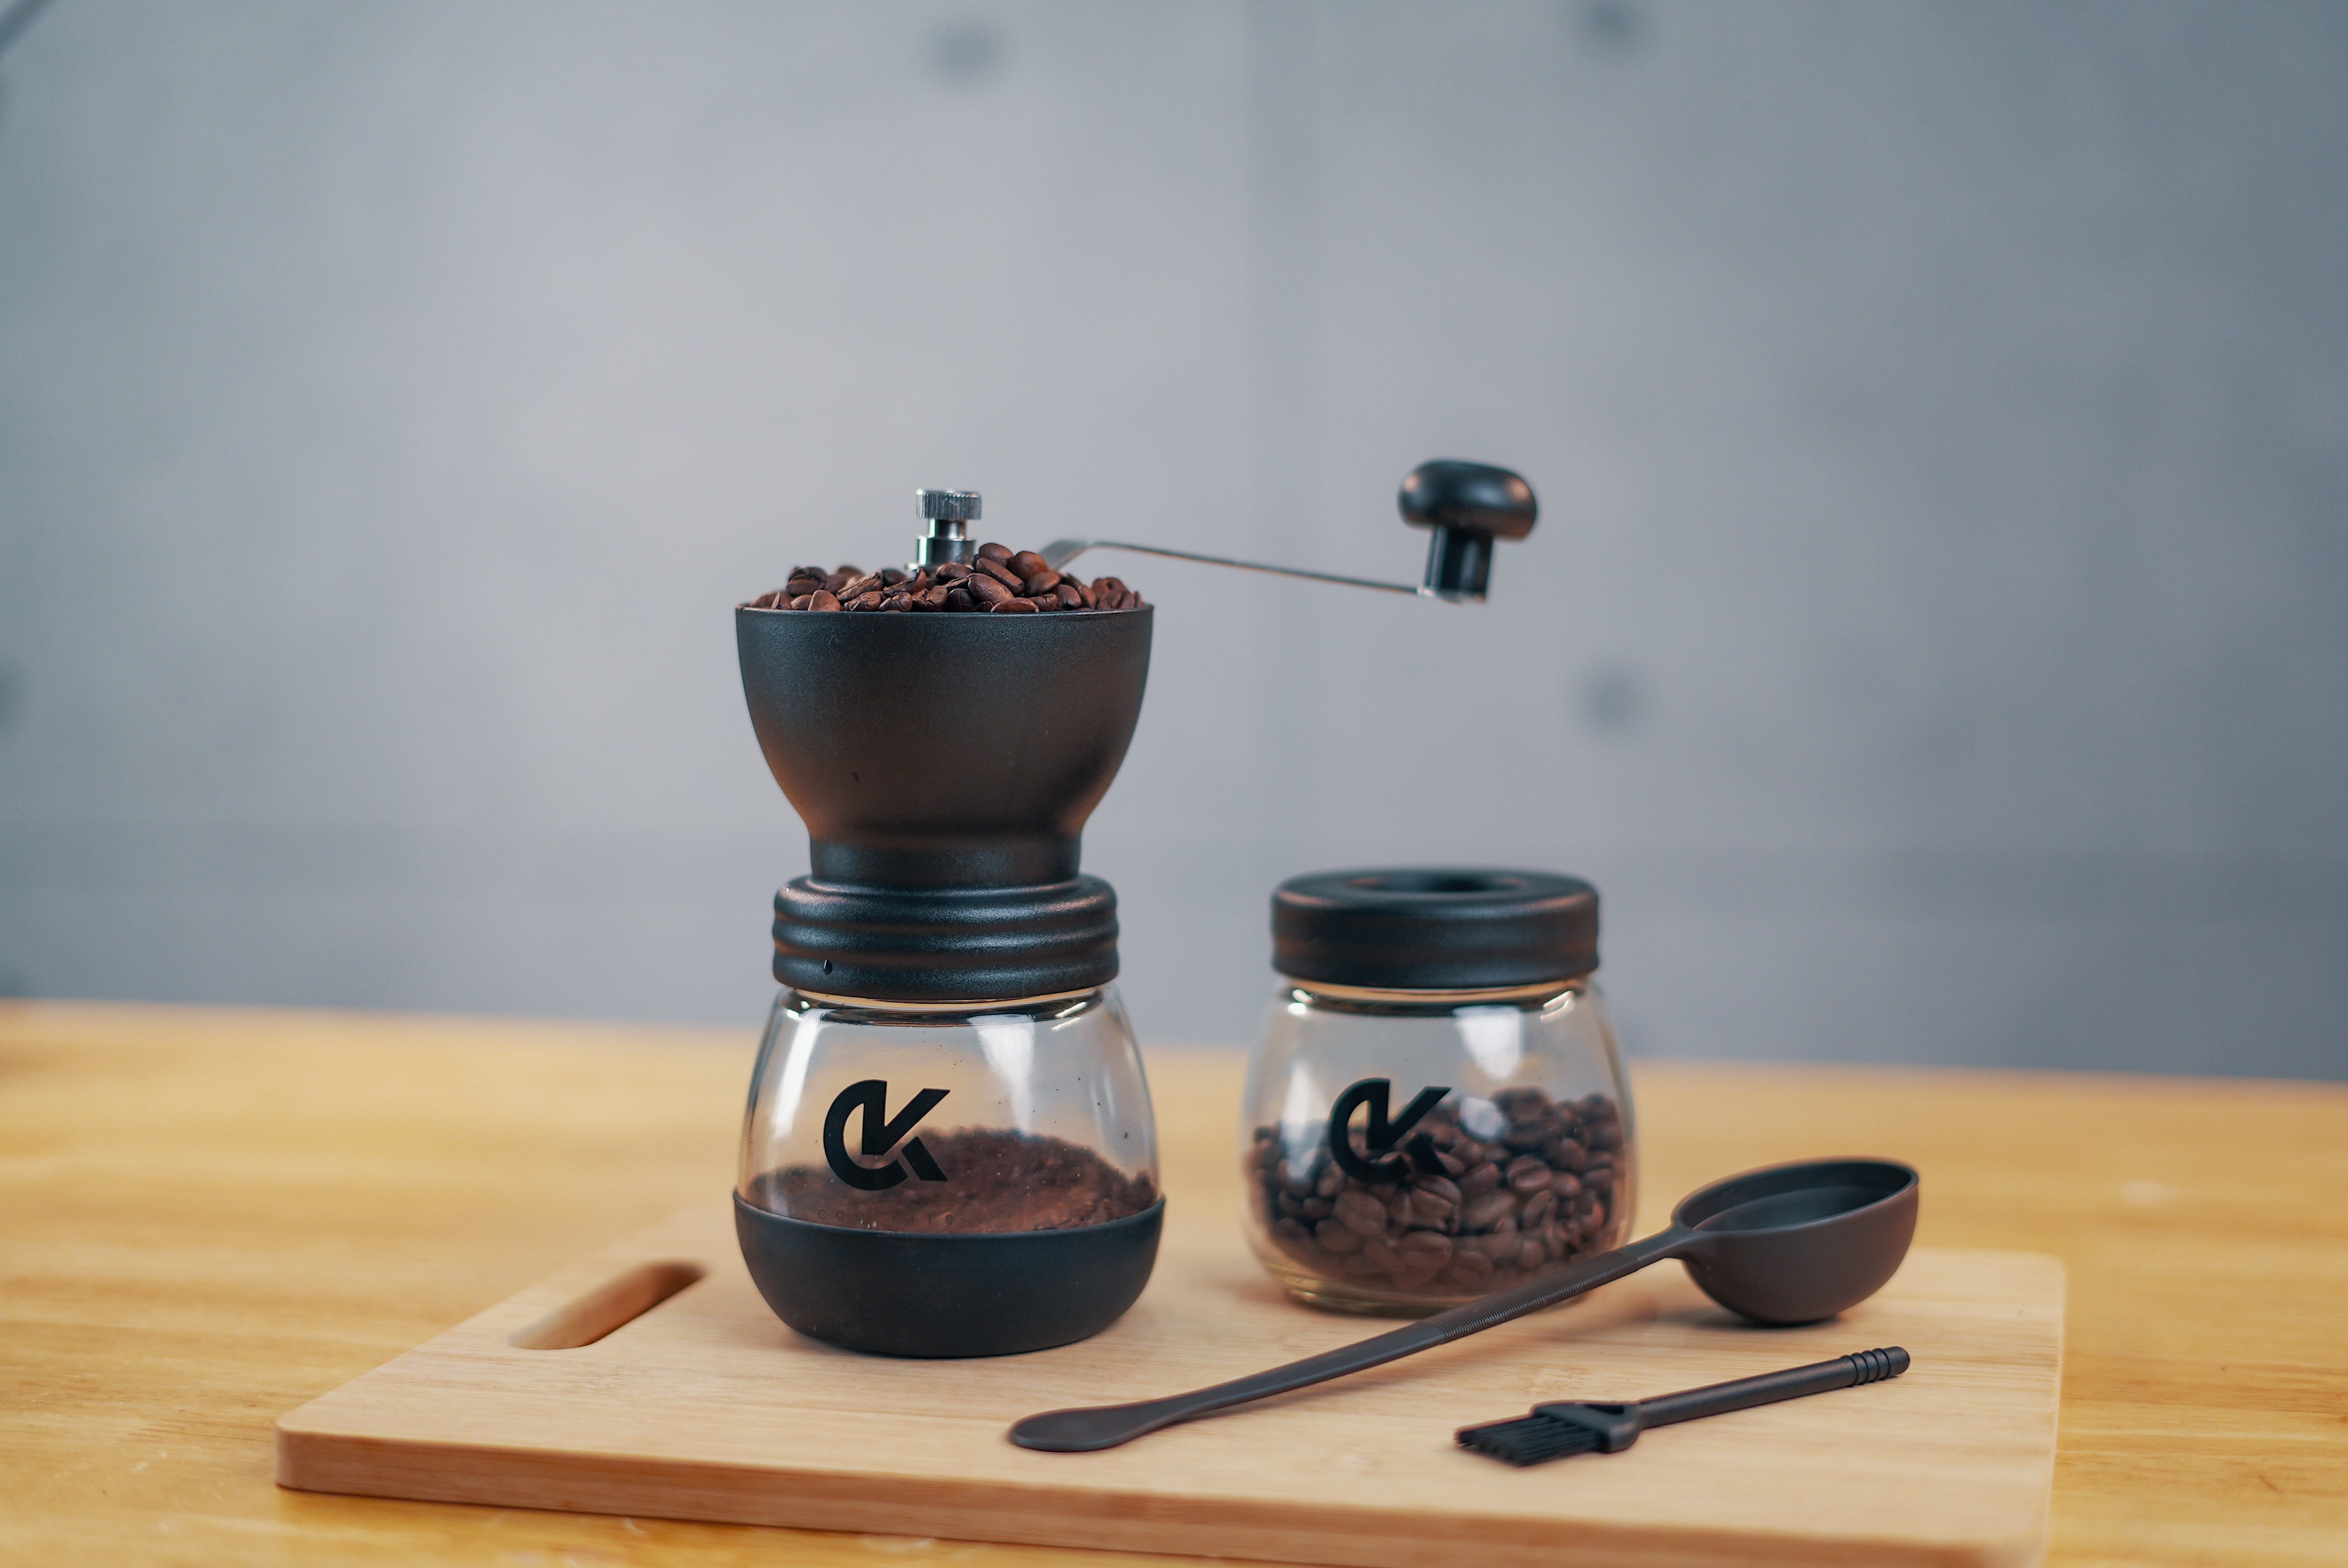 Hario Skerton Plus Ceramic Coffee Grinder